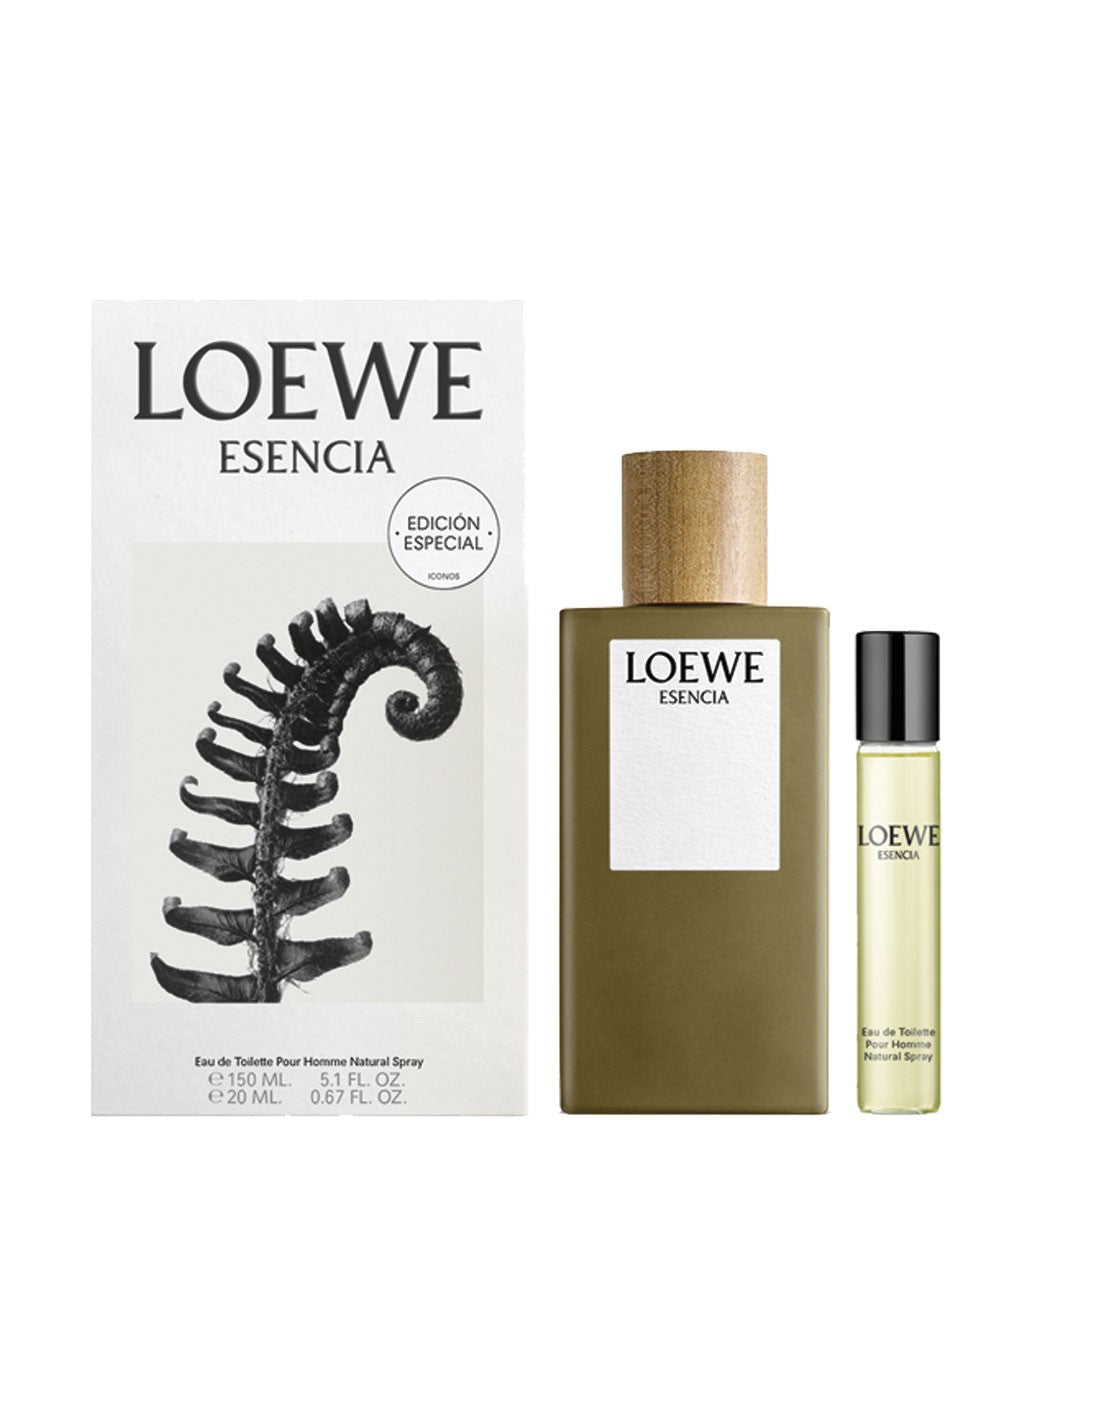 Loewe Esencia Homme et 150 Vap 20ml 盒装